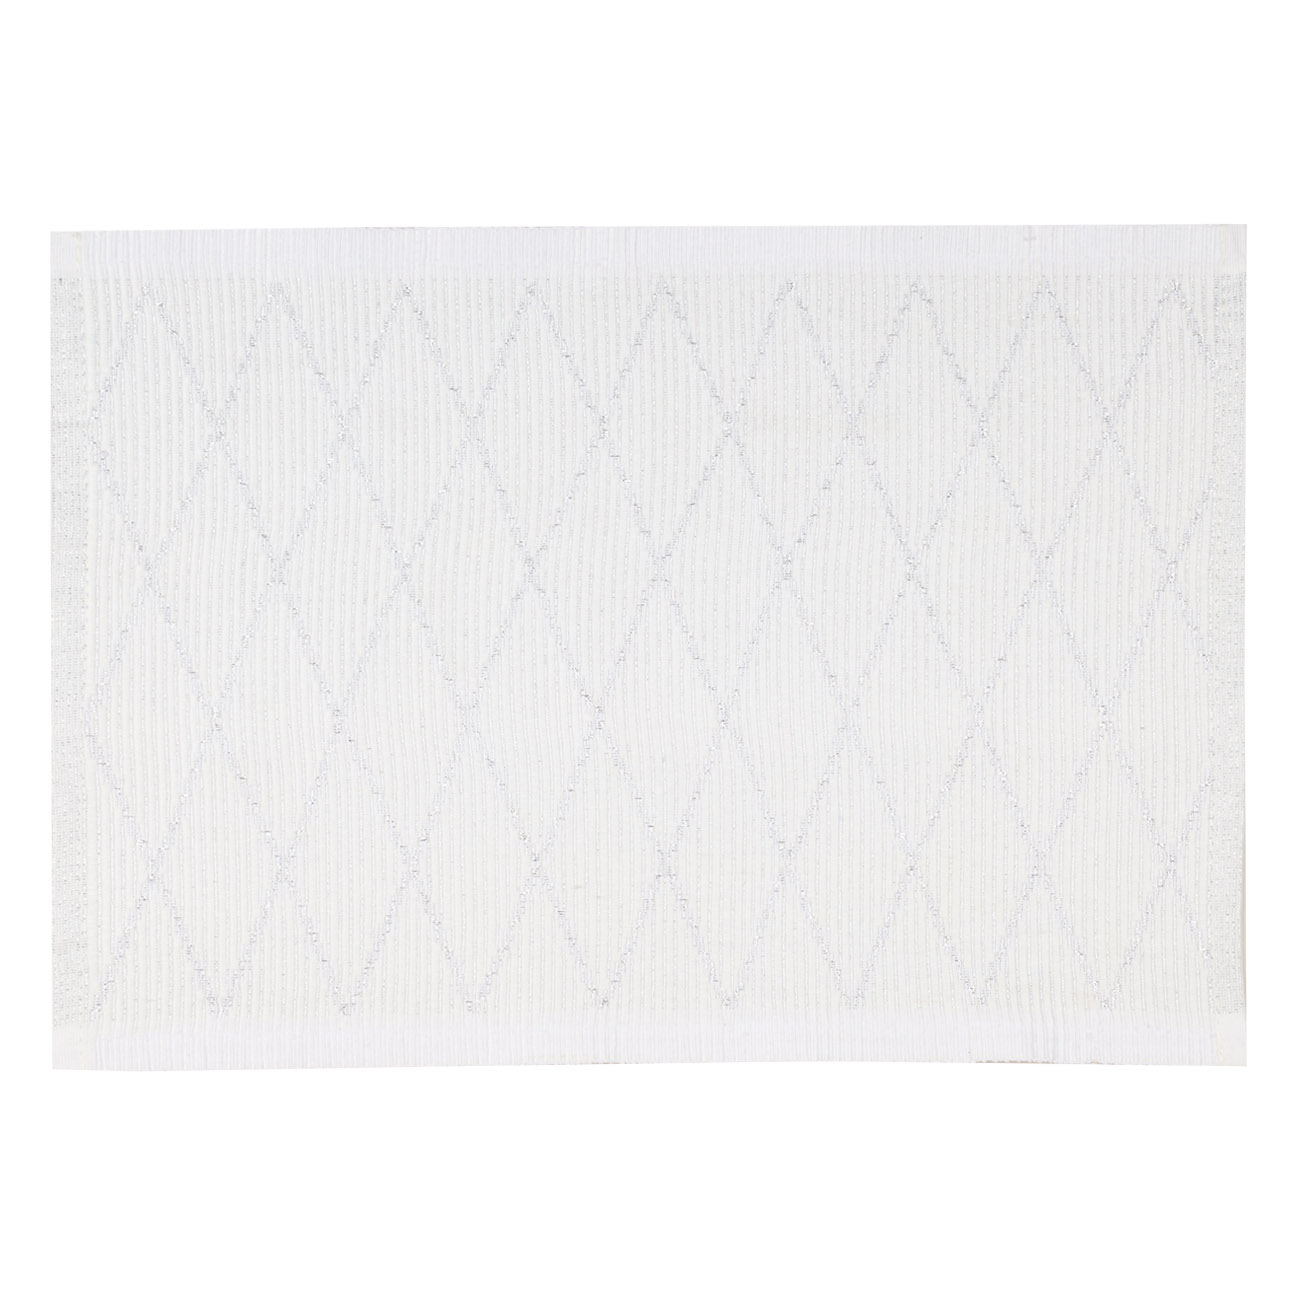 Салфетка под приборы, 30х45 см, полиэстер, прямоугольная, серая, Ромбы, Diamond pattern - фото 1